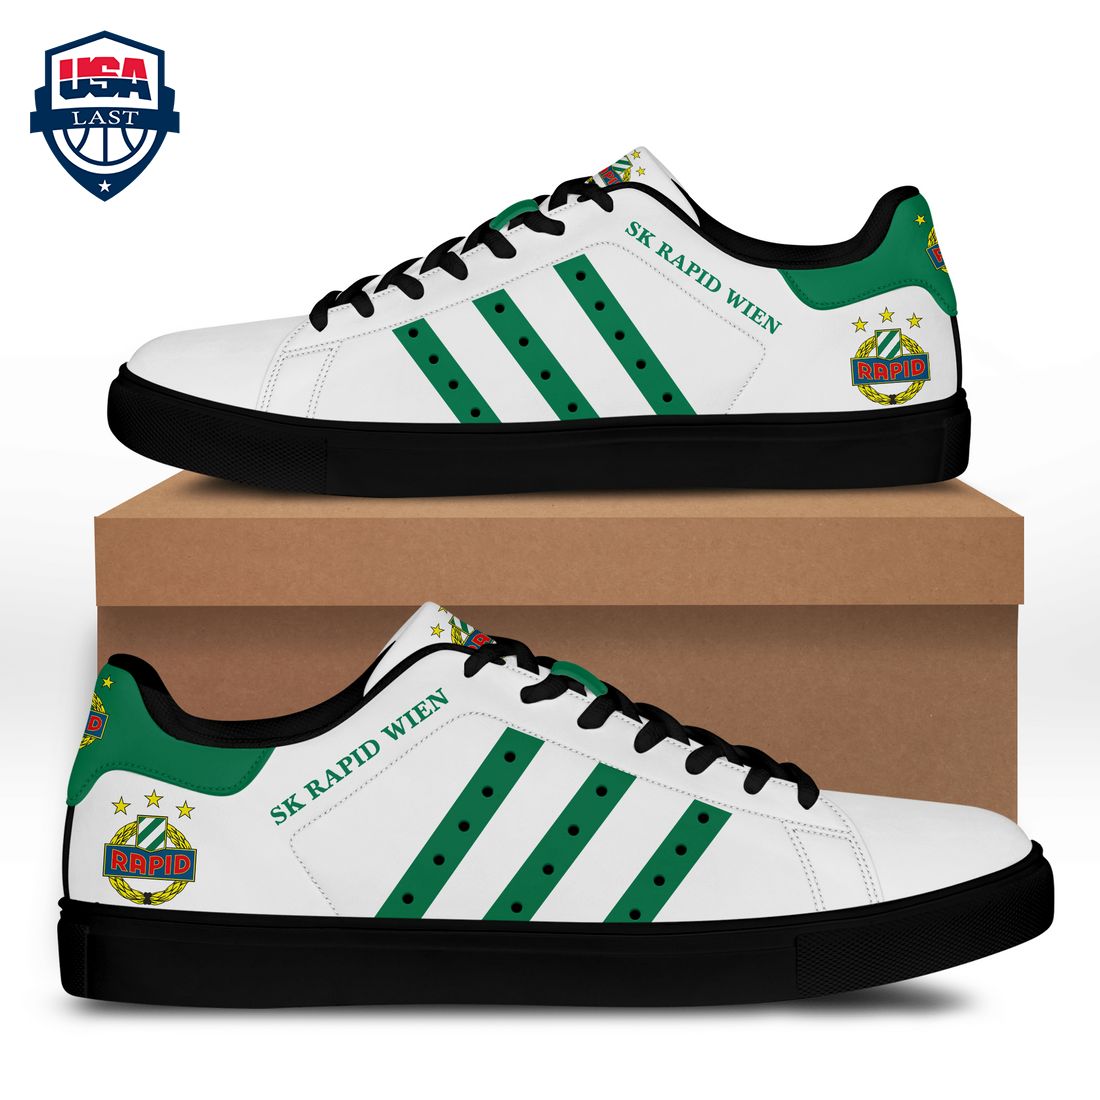 SK Rapid Wien Green Stripes Stan Smith Low Top Shoes - Wow, cute pie